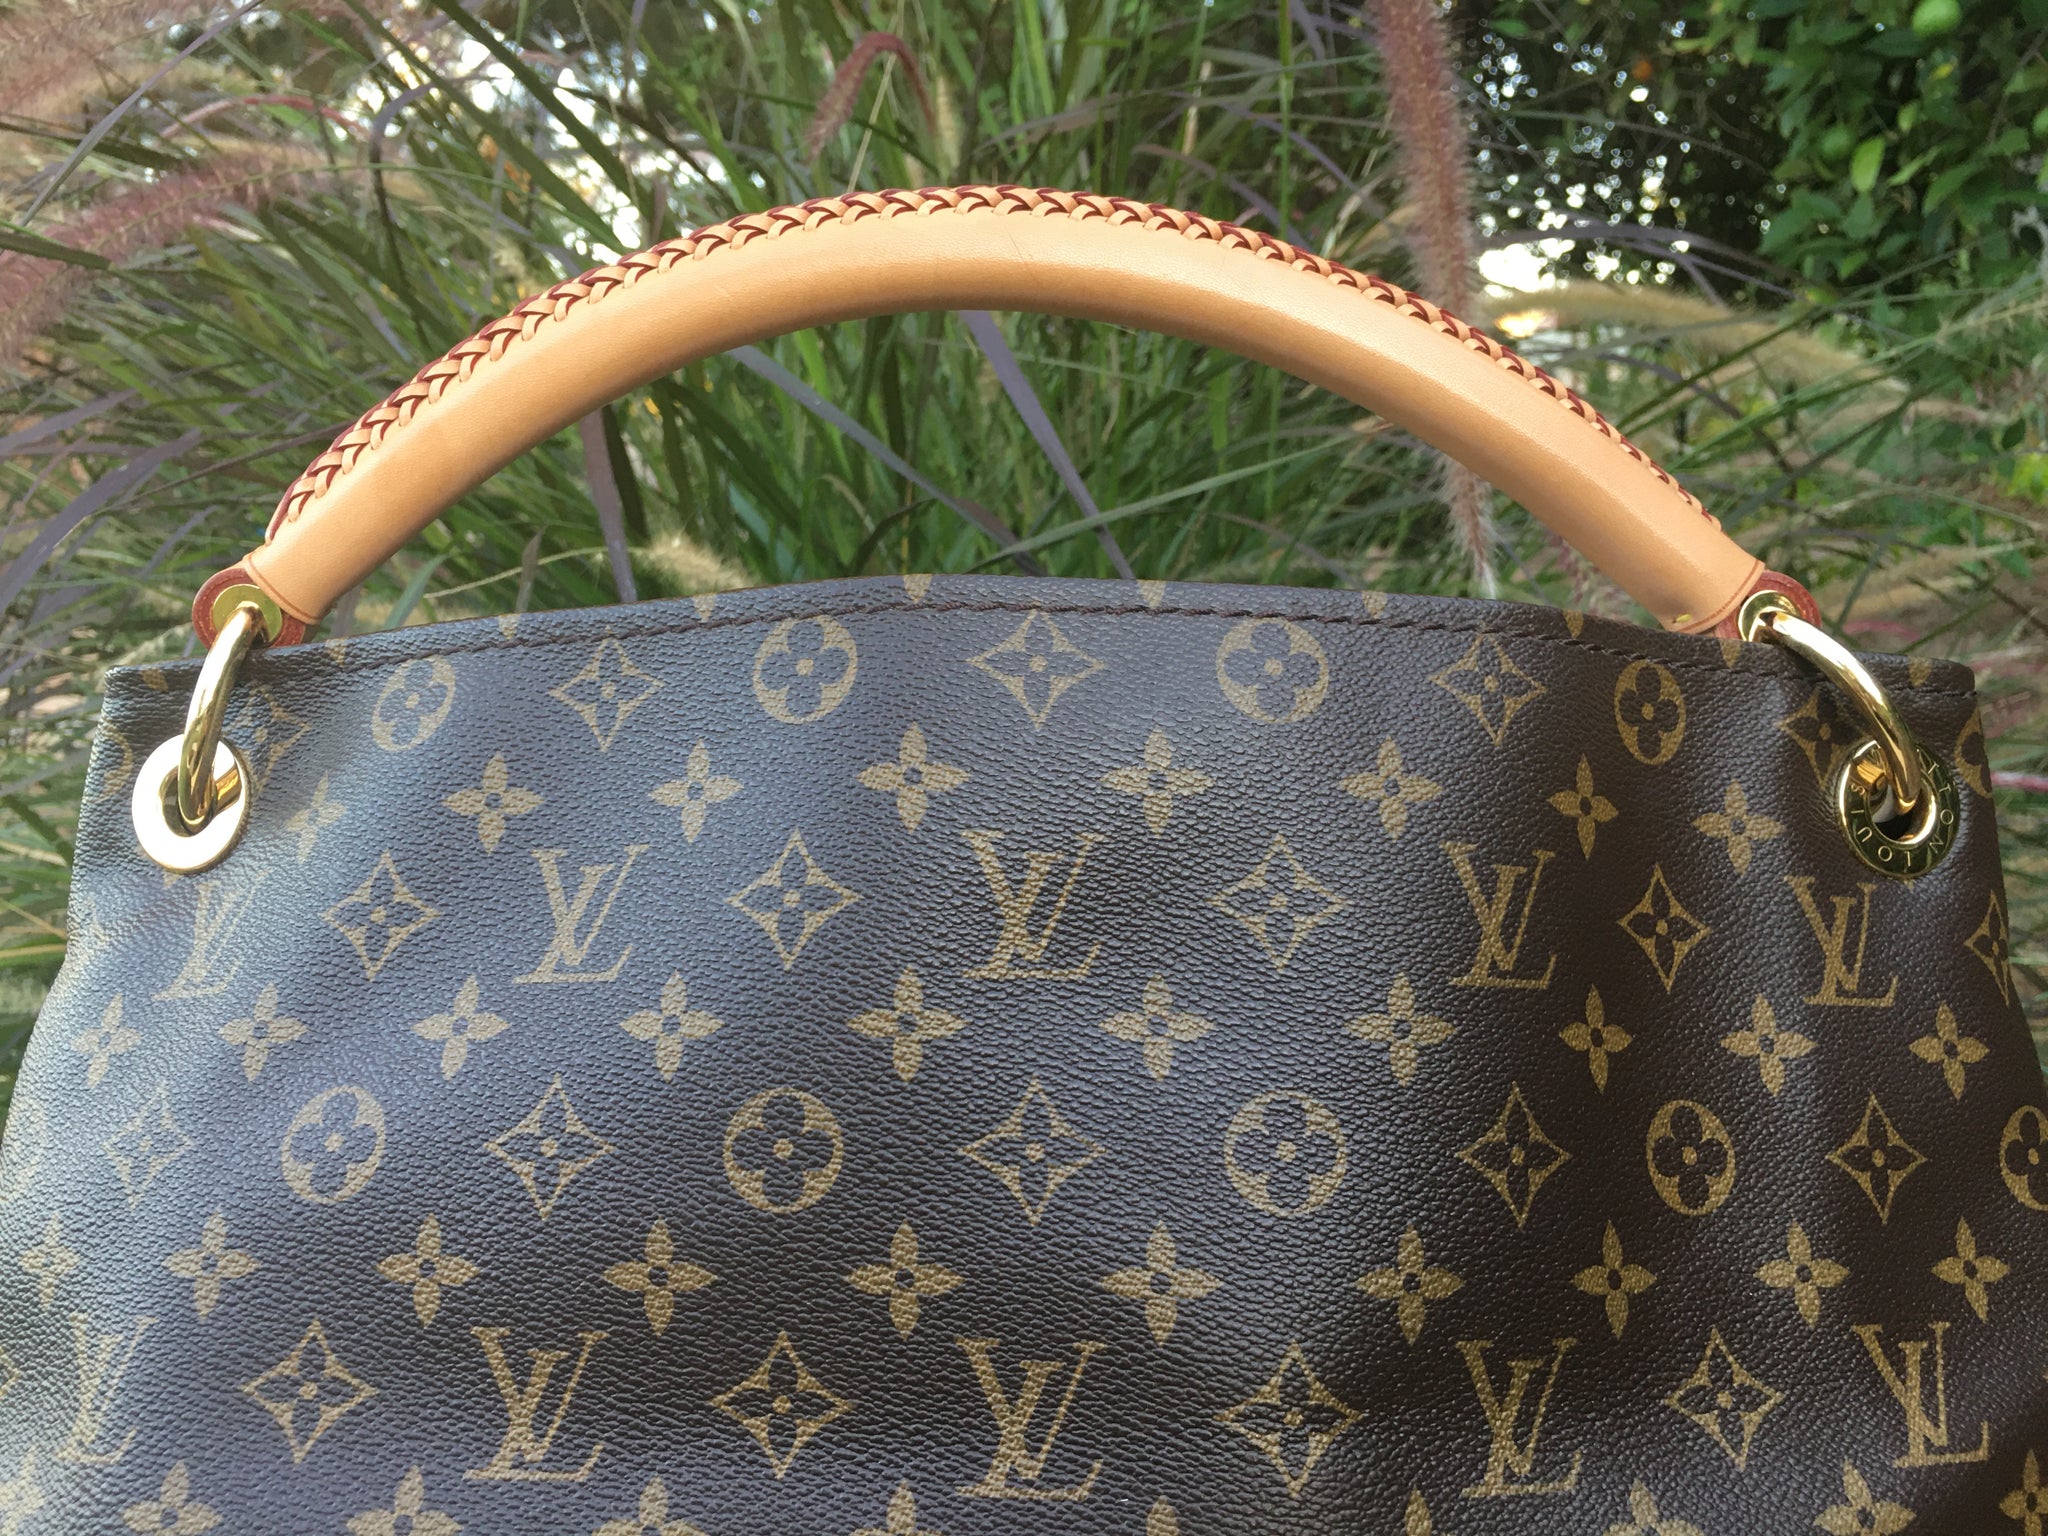 LOUIS VUITTON Authentic Artsy MM Monogram Shoulder Hobo Handbag